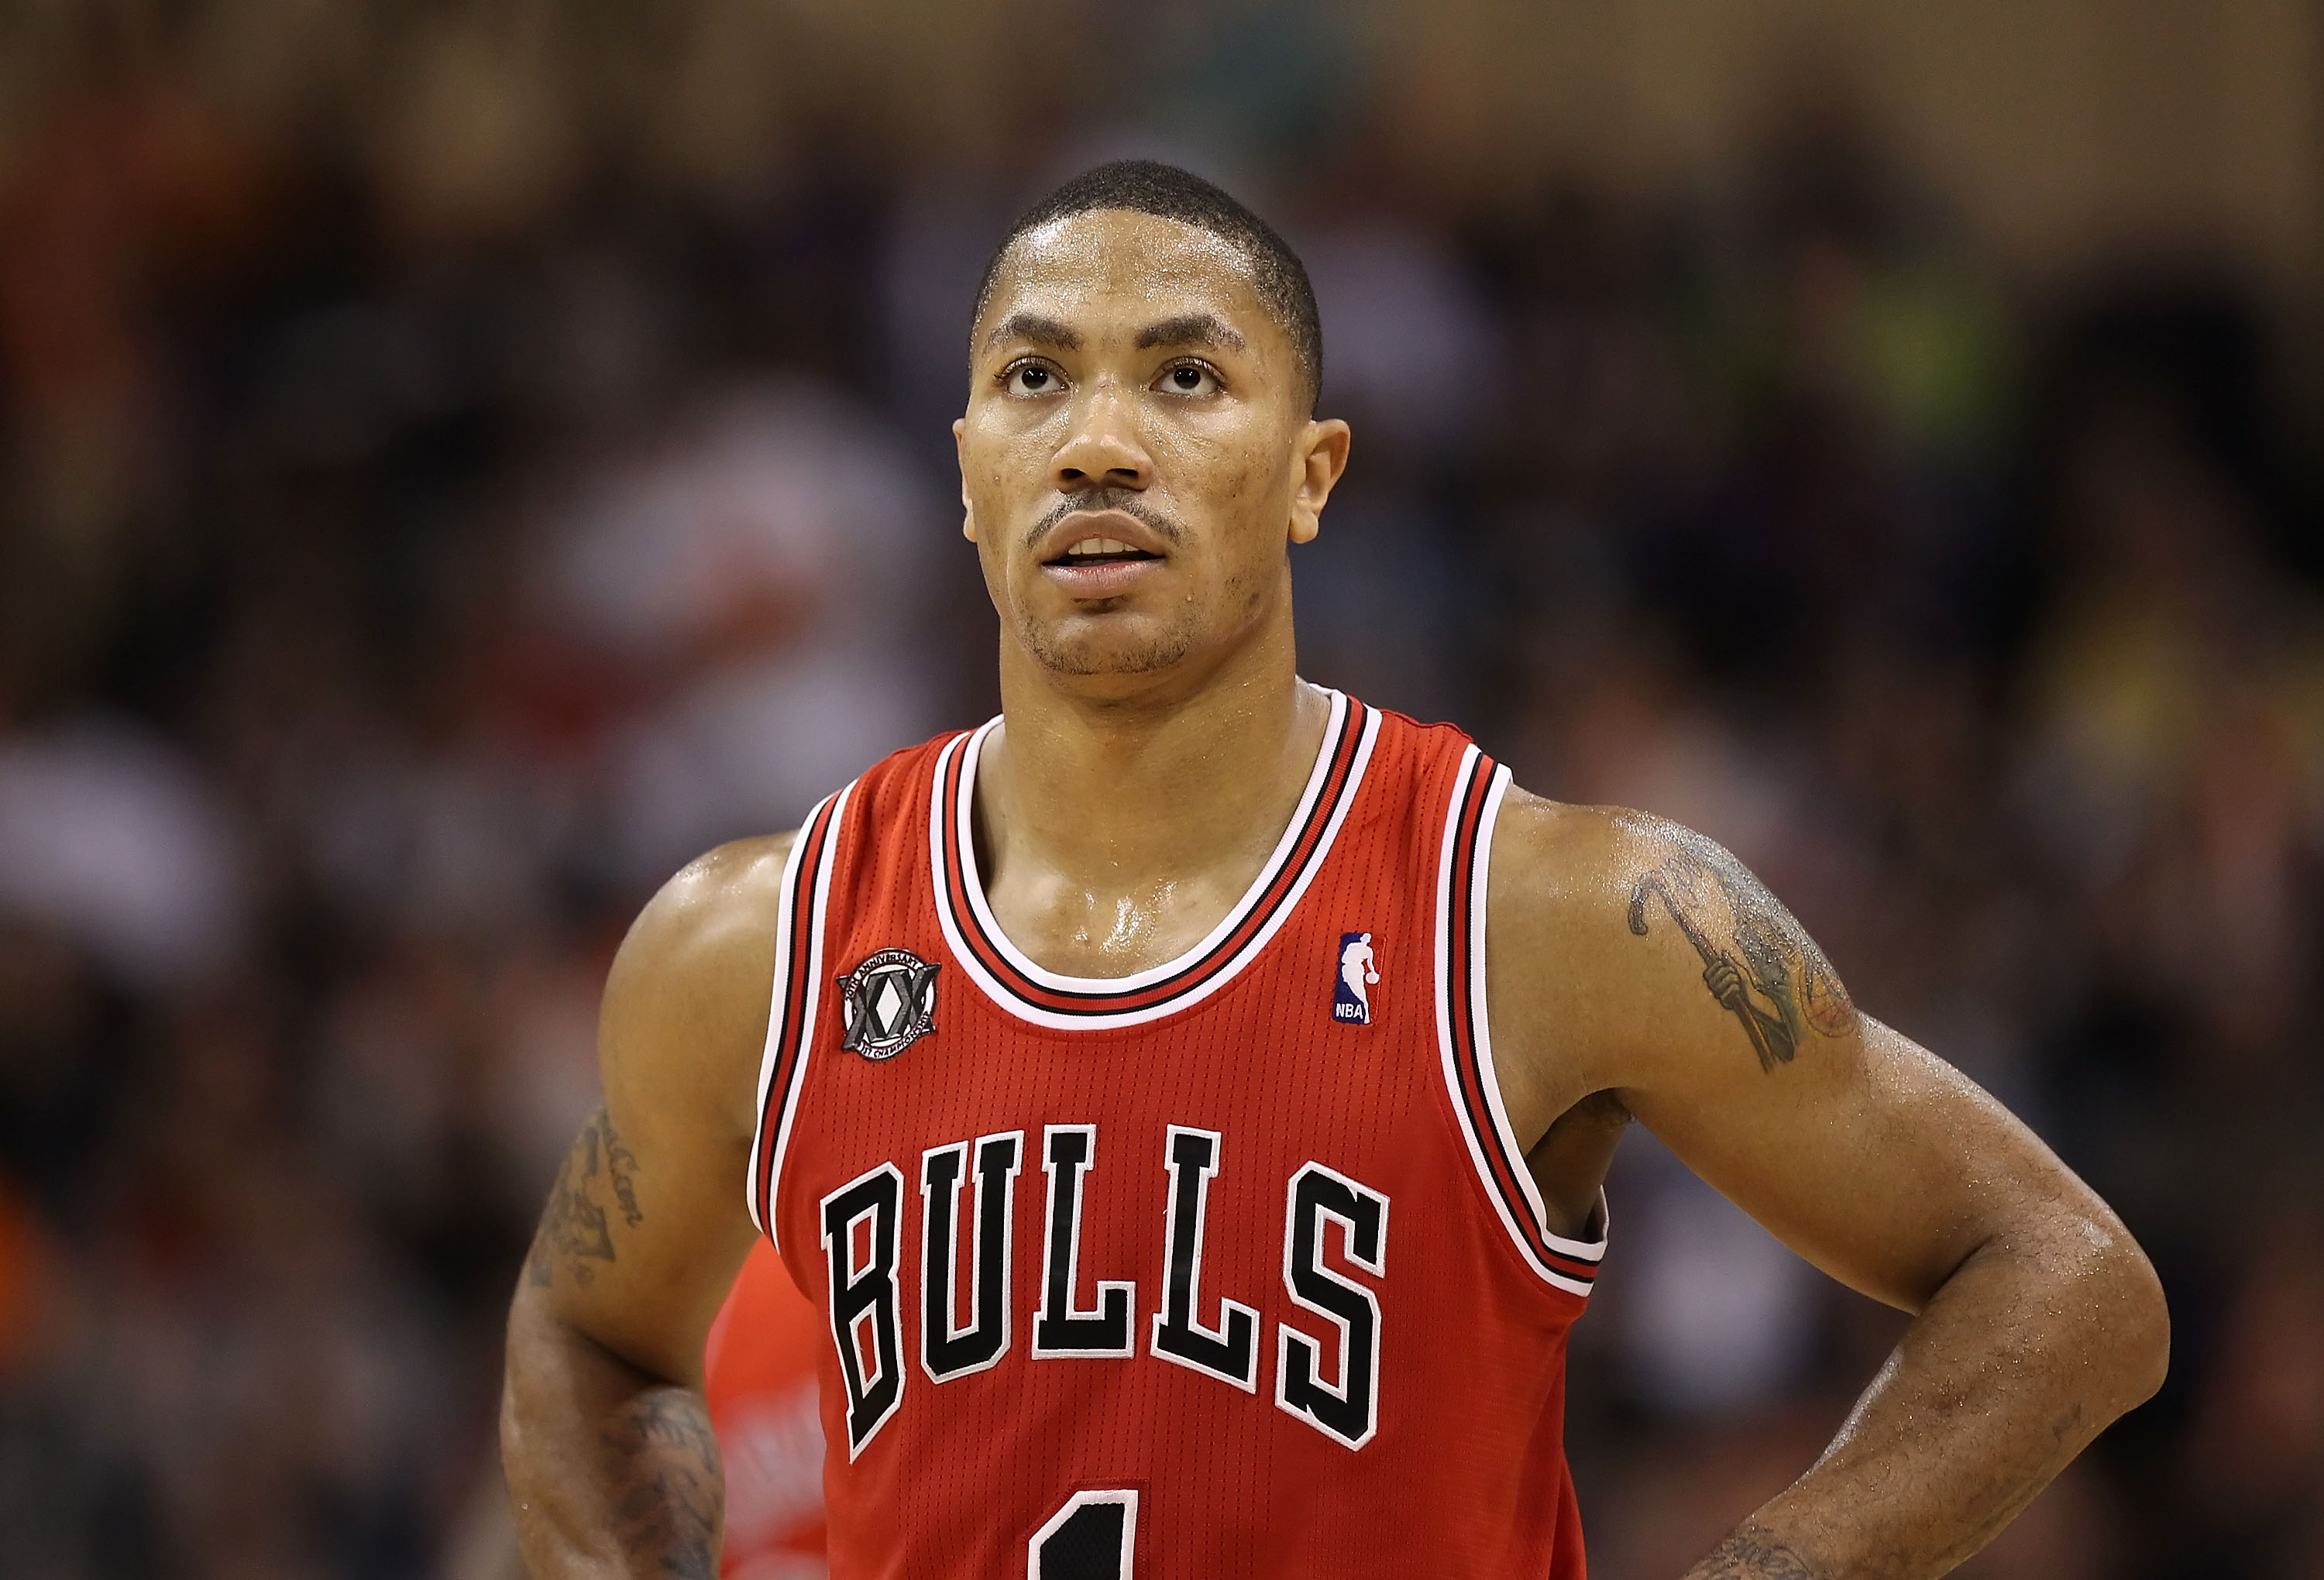 Chicago Bulls' Derrick Rose making case for league MVP